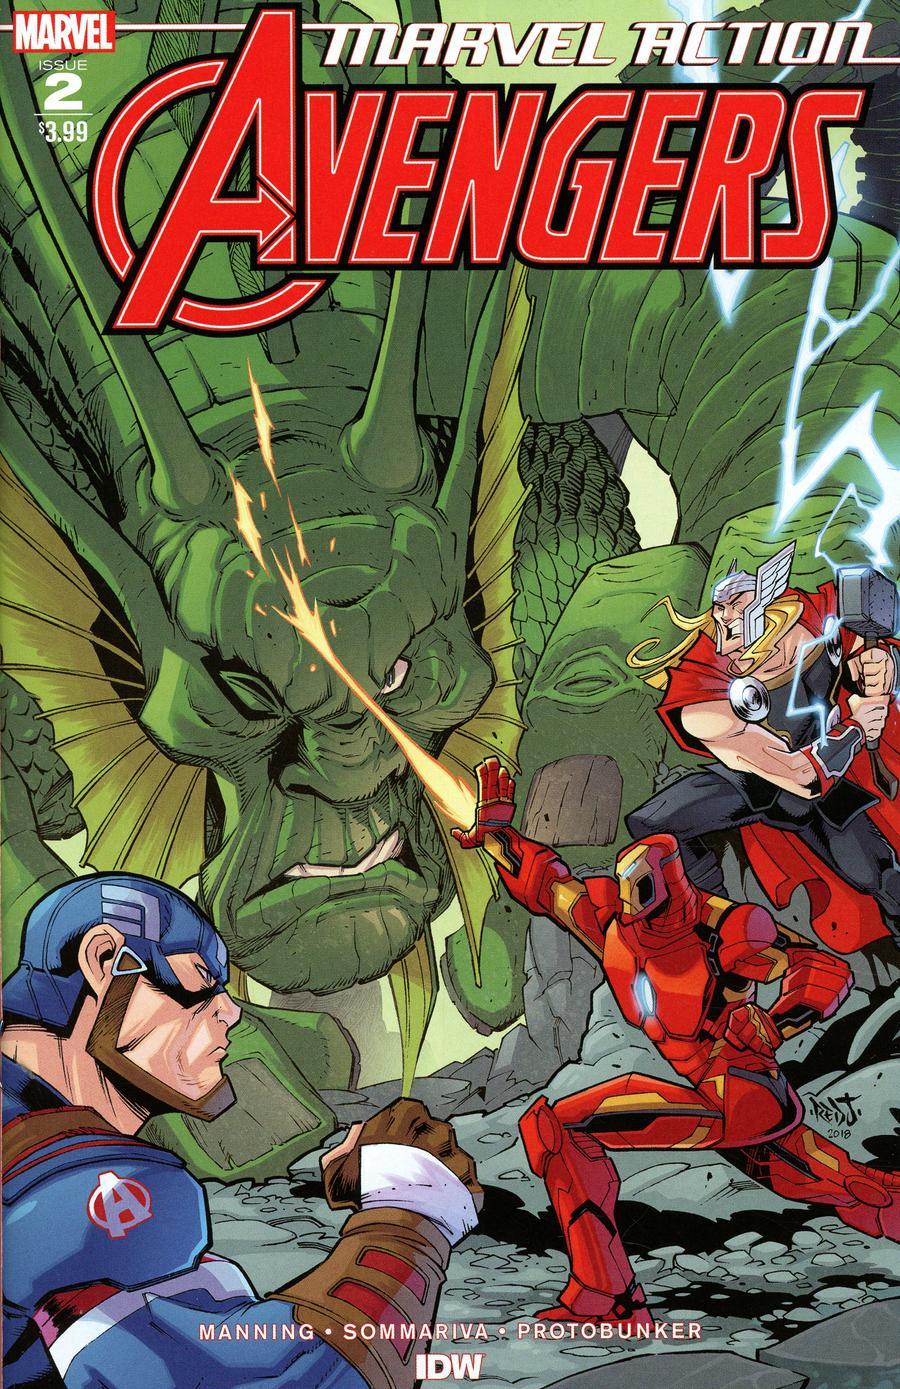 Marvel Action Avengers Vol. 1 #2